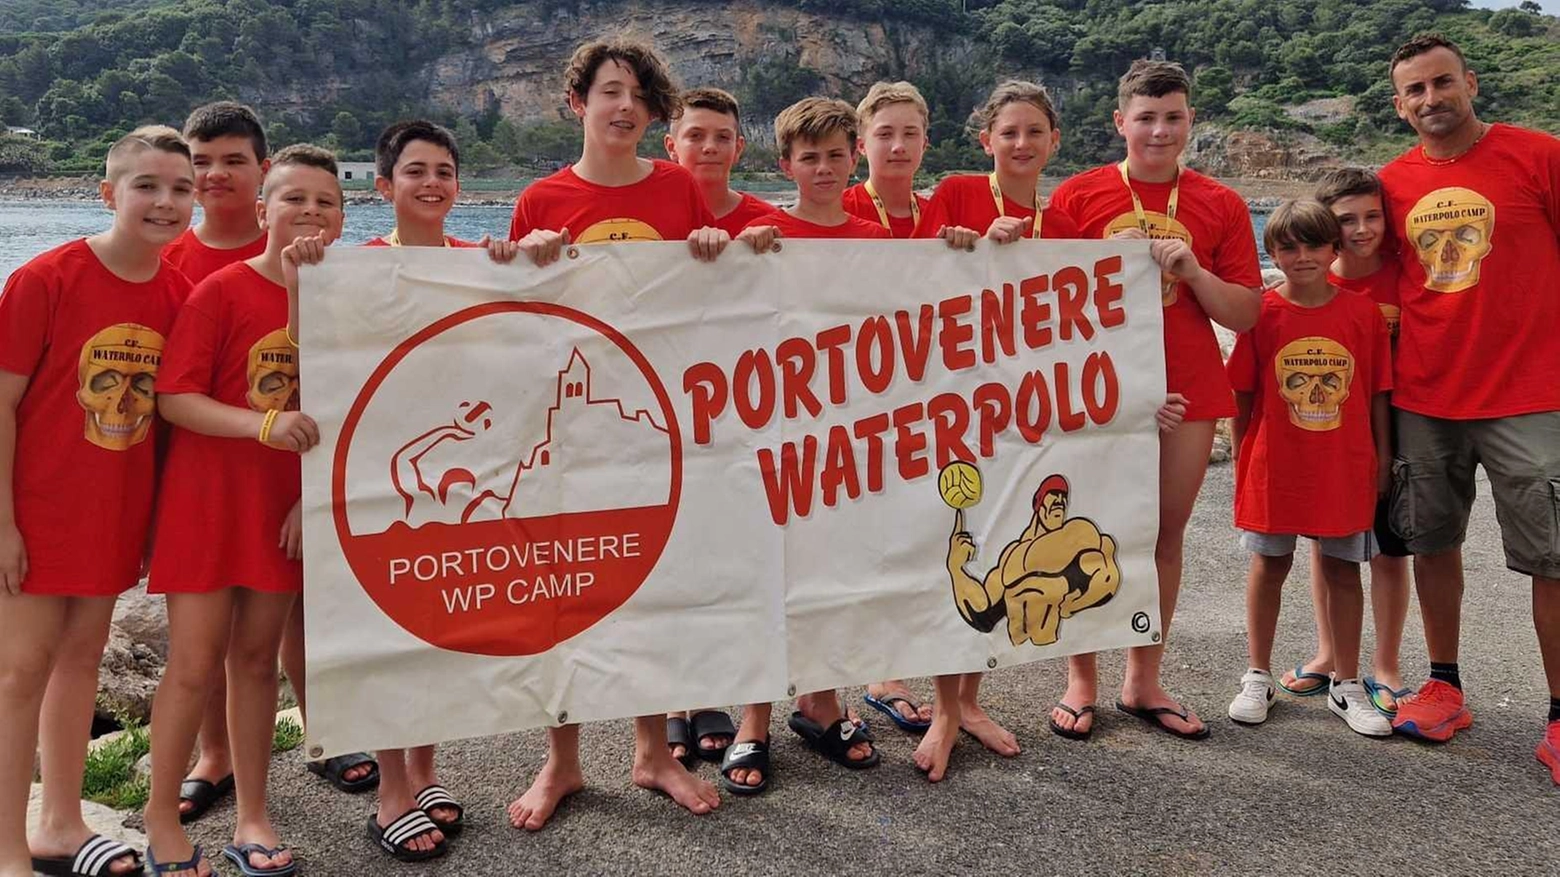 Il Cf Waterpolo Camp a Porto Venere ha offerto due settimane di formazione e divertimento per ragazzi under 12 e under 14, con focus sulla pallanuoto e il salvamento. Il coach Carlo Foti ha organizzato anche un torneo di beach waterpolo master per agosto.